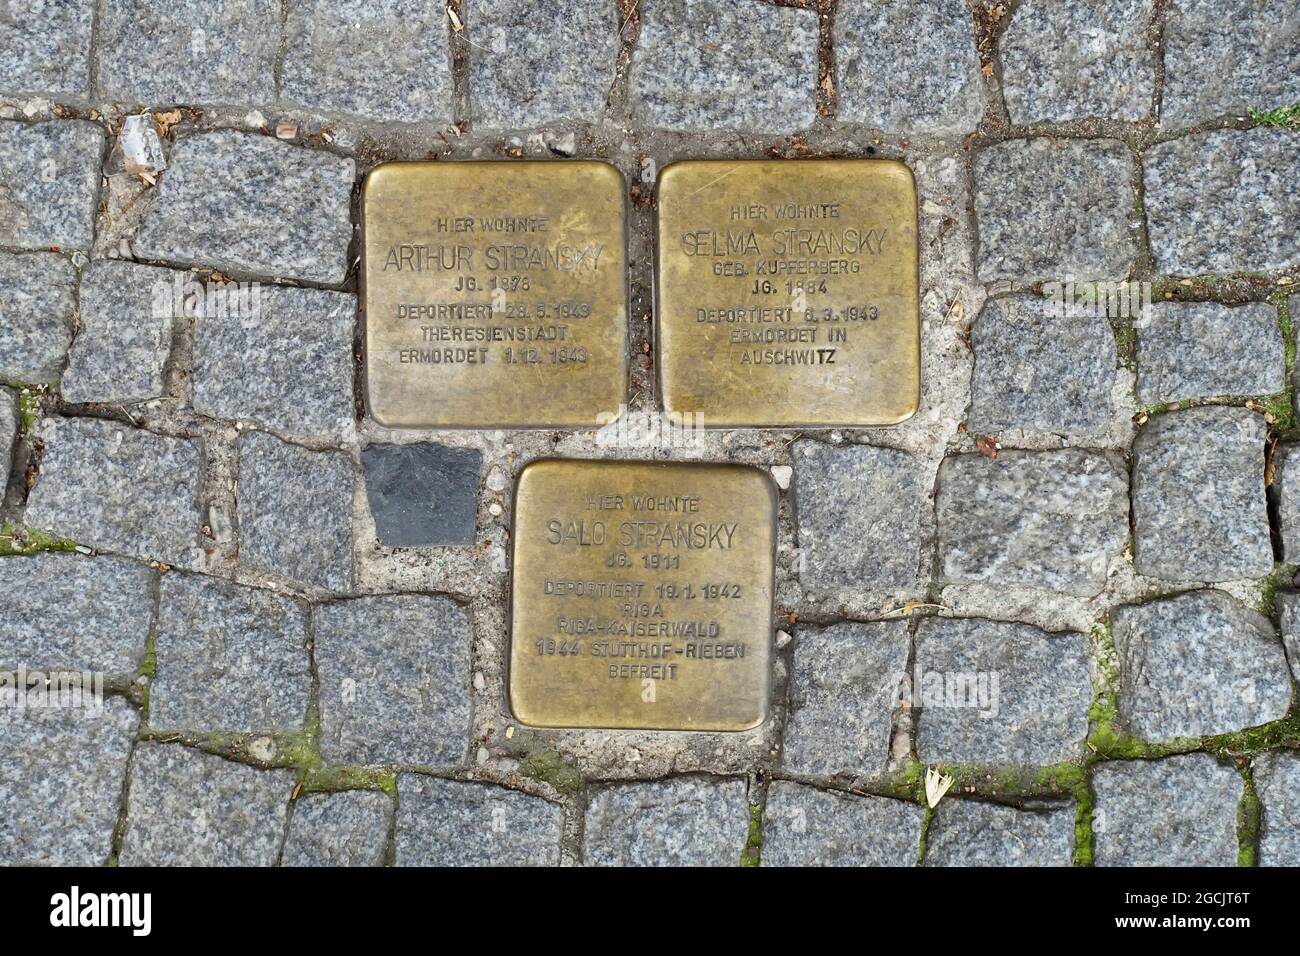 Family Stransky, stumbling stones in Berlin, Germany Stock Photo